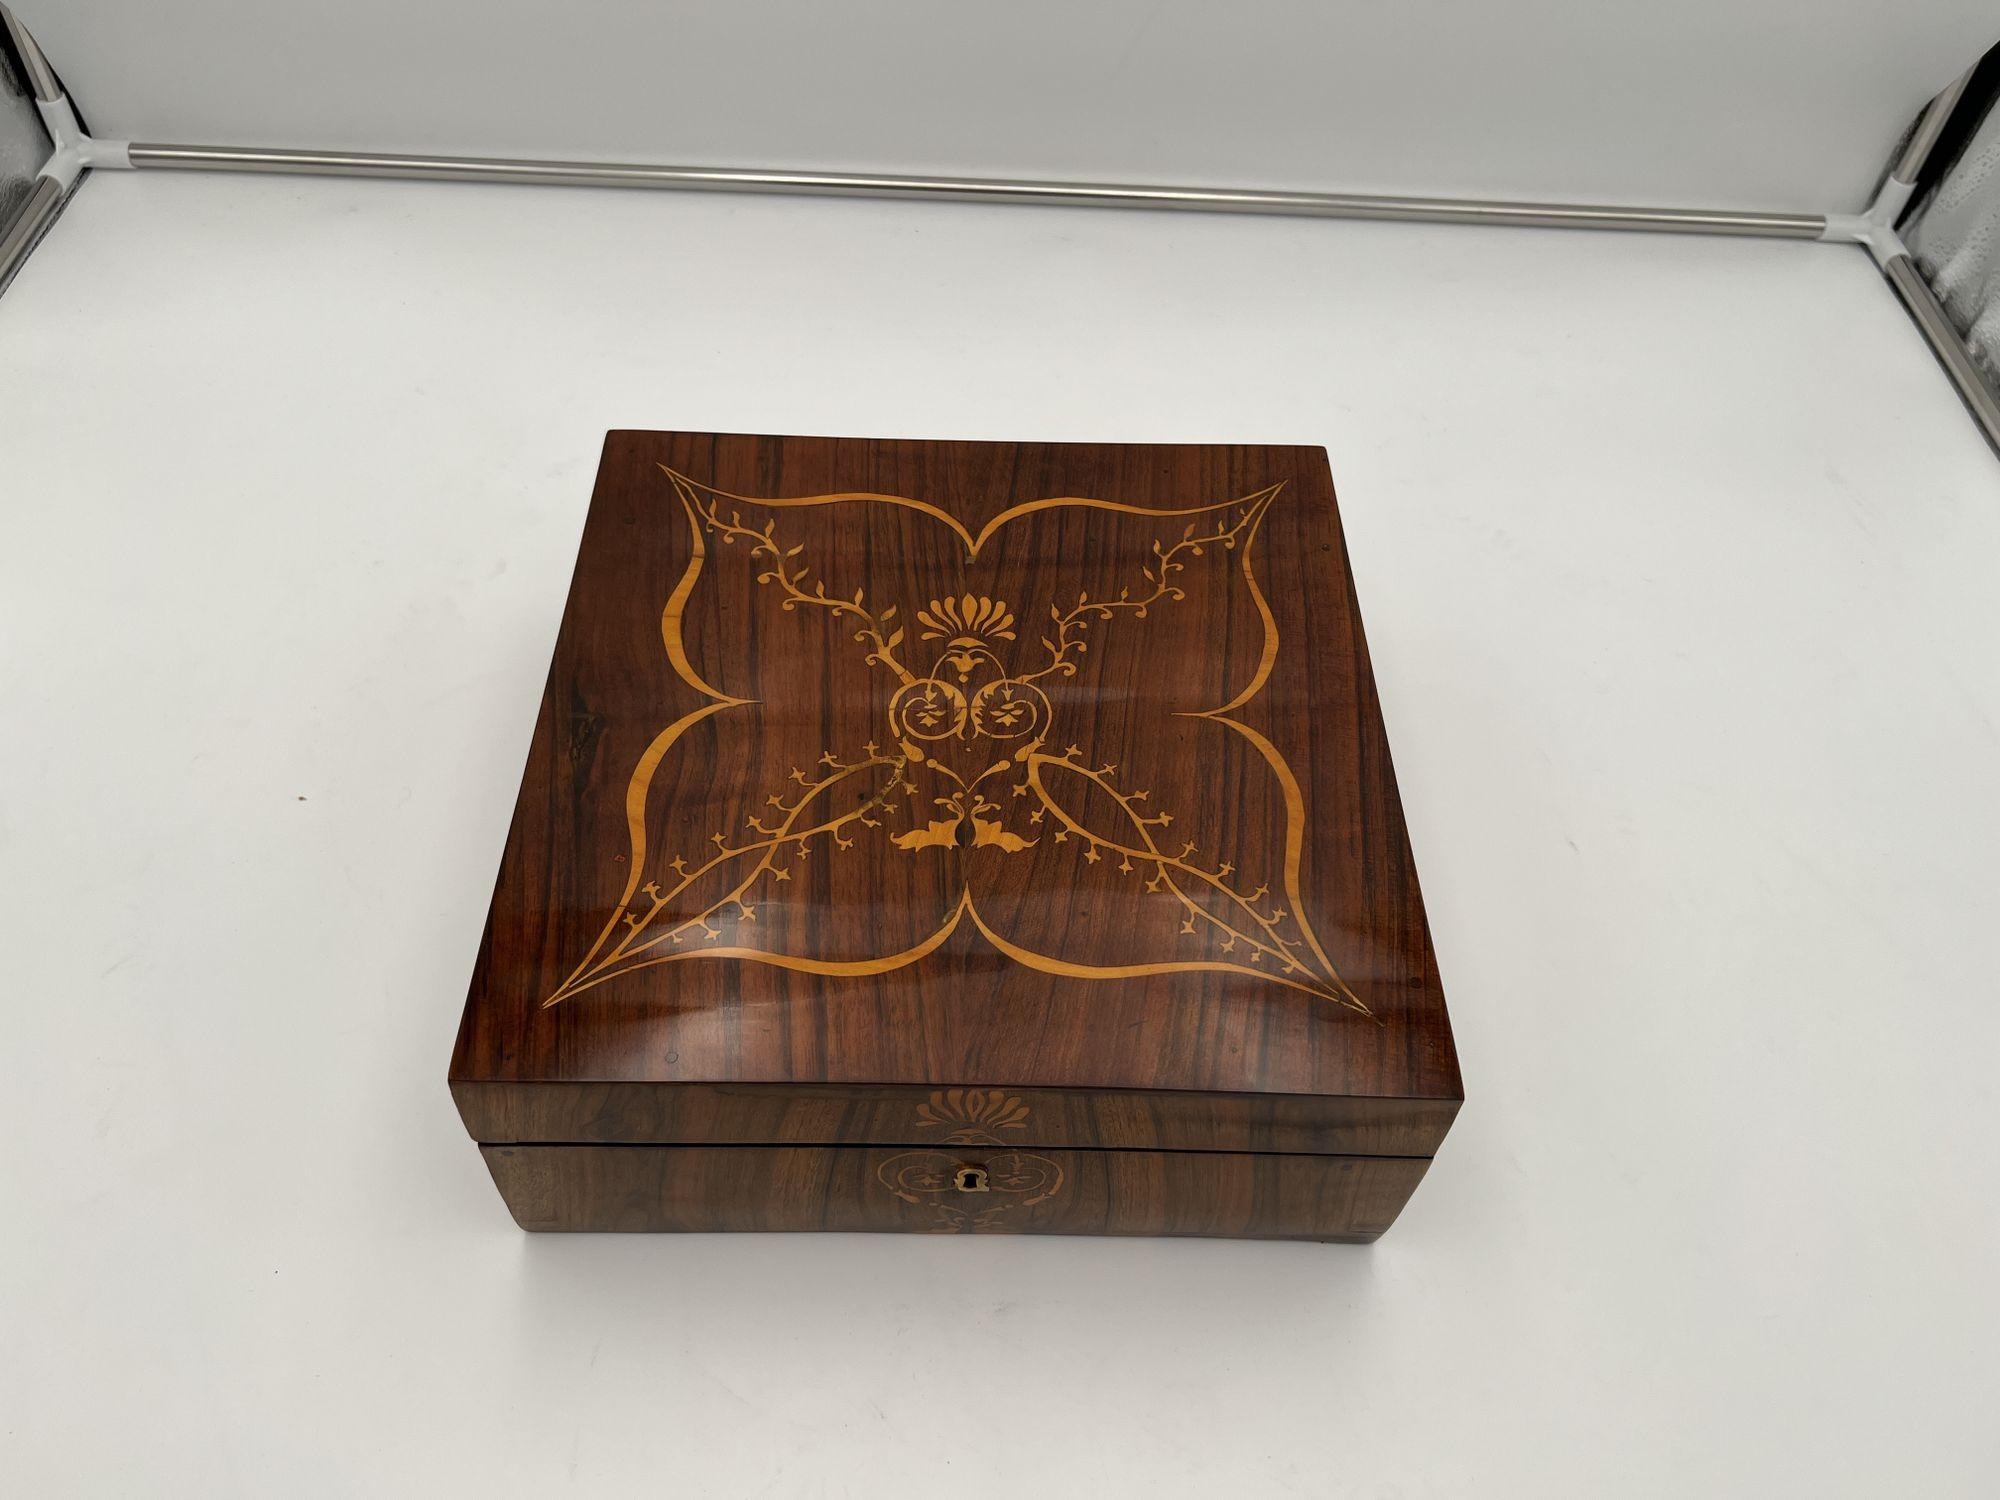 Austrian Biedermeier Jewelry Box, Walnut with Maple Inlays, Vienna, Austria circa 1830